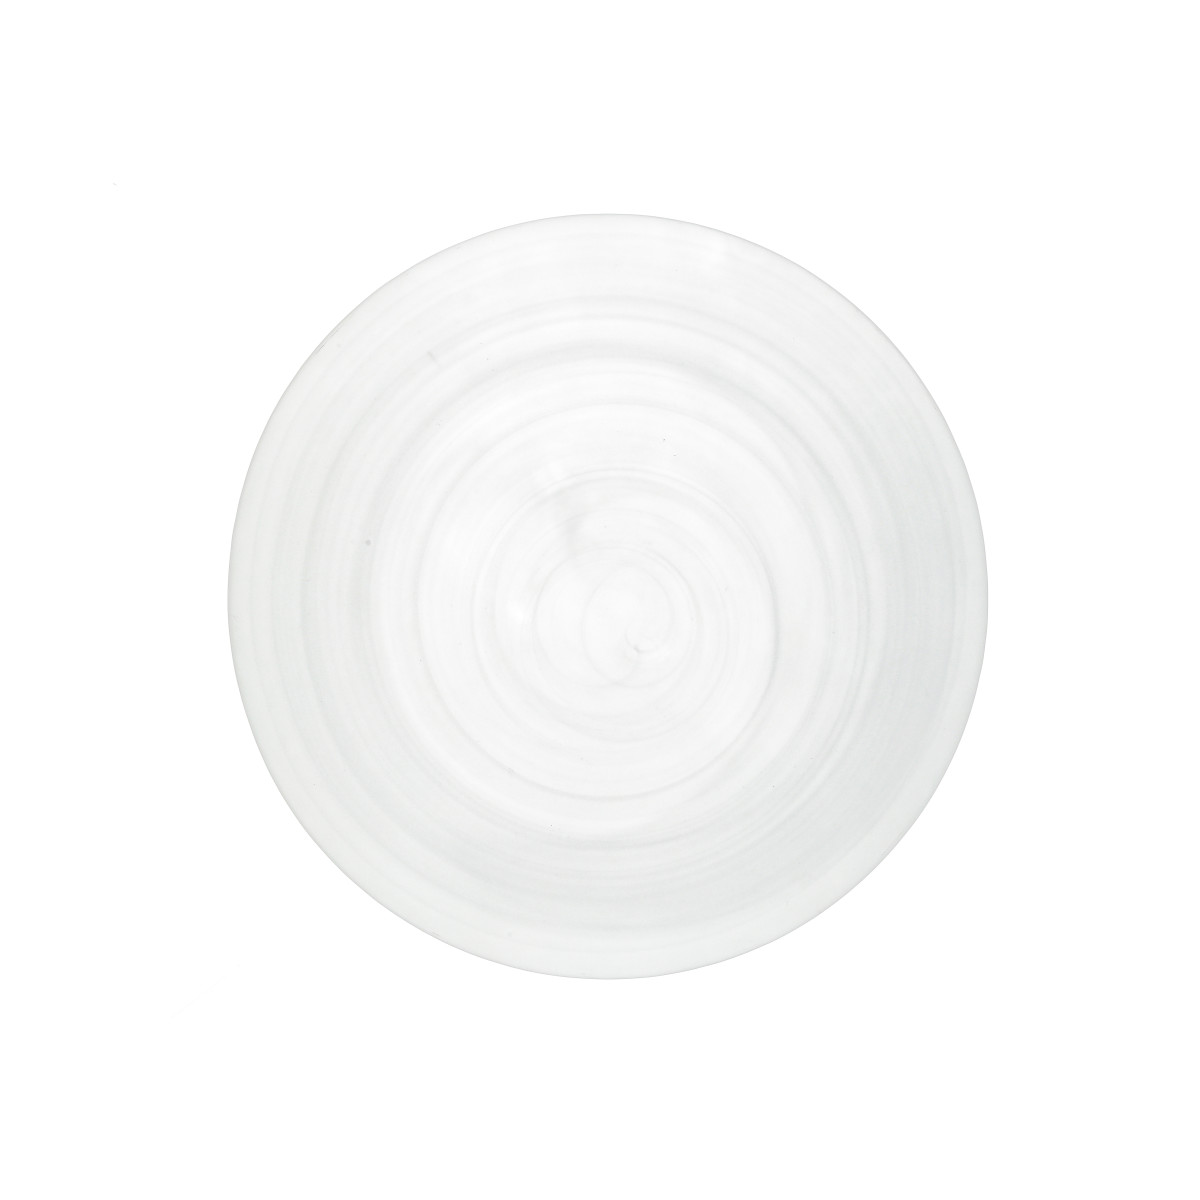 La Jolla Dinner Plate, White, Set of 4